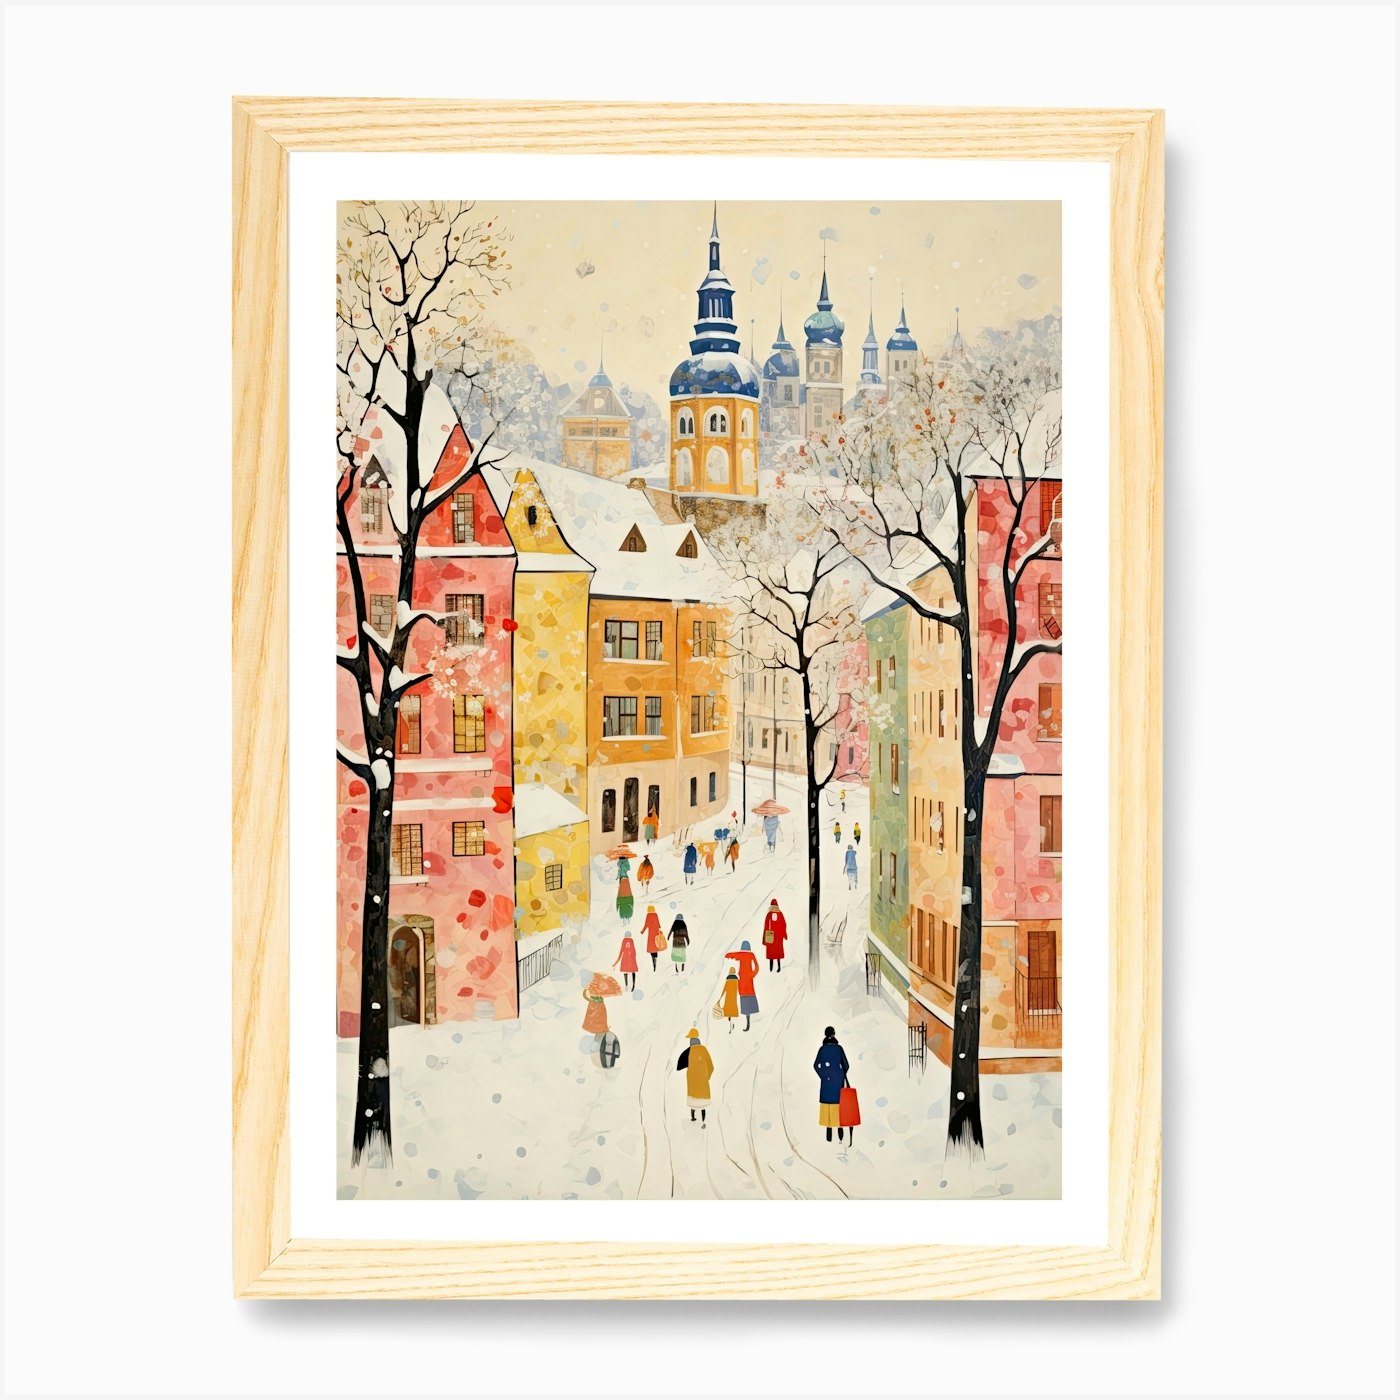 Snowy Old Vienna Street by Canadragon on DeviantArt